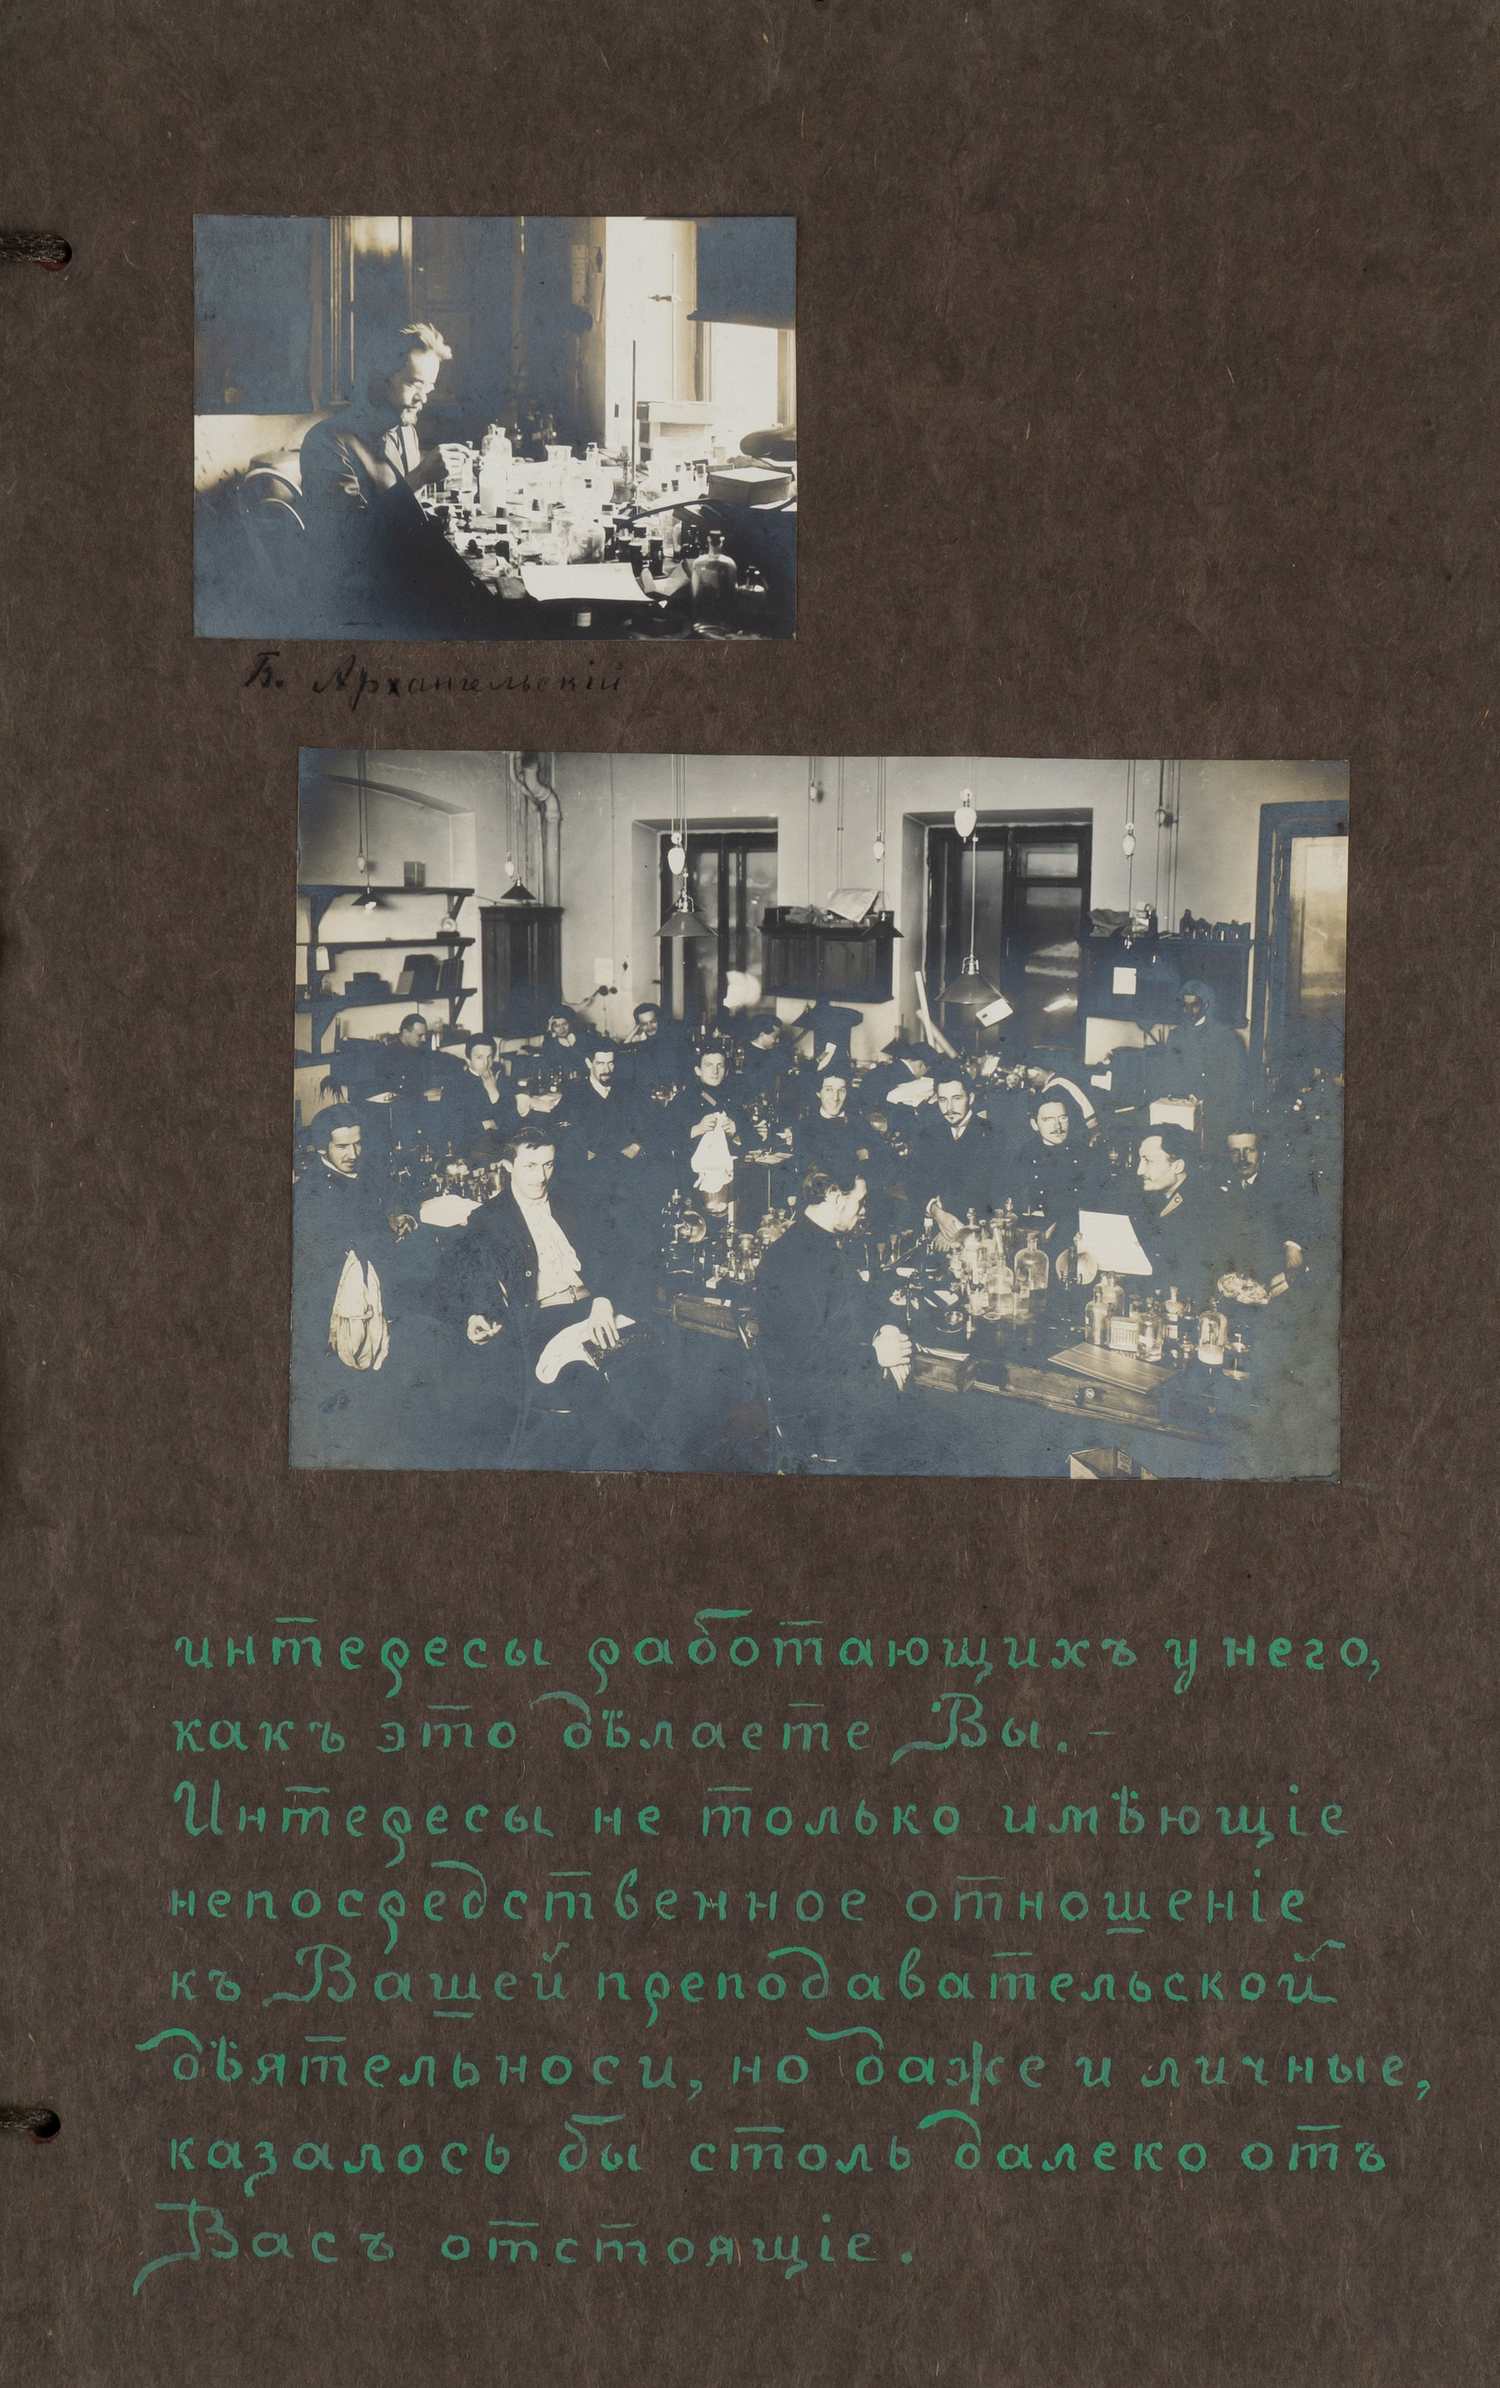 Оформленный фотографиями подносной адрес выдающемуся русскому зоологу Николаю Юрьевичу Зографу от студентов его лаборатории от 9 декабря 1909 года.